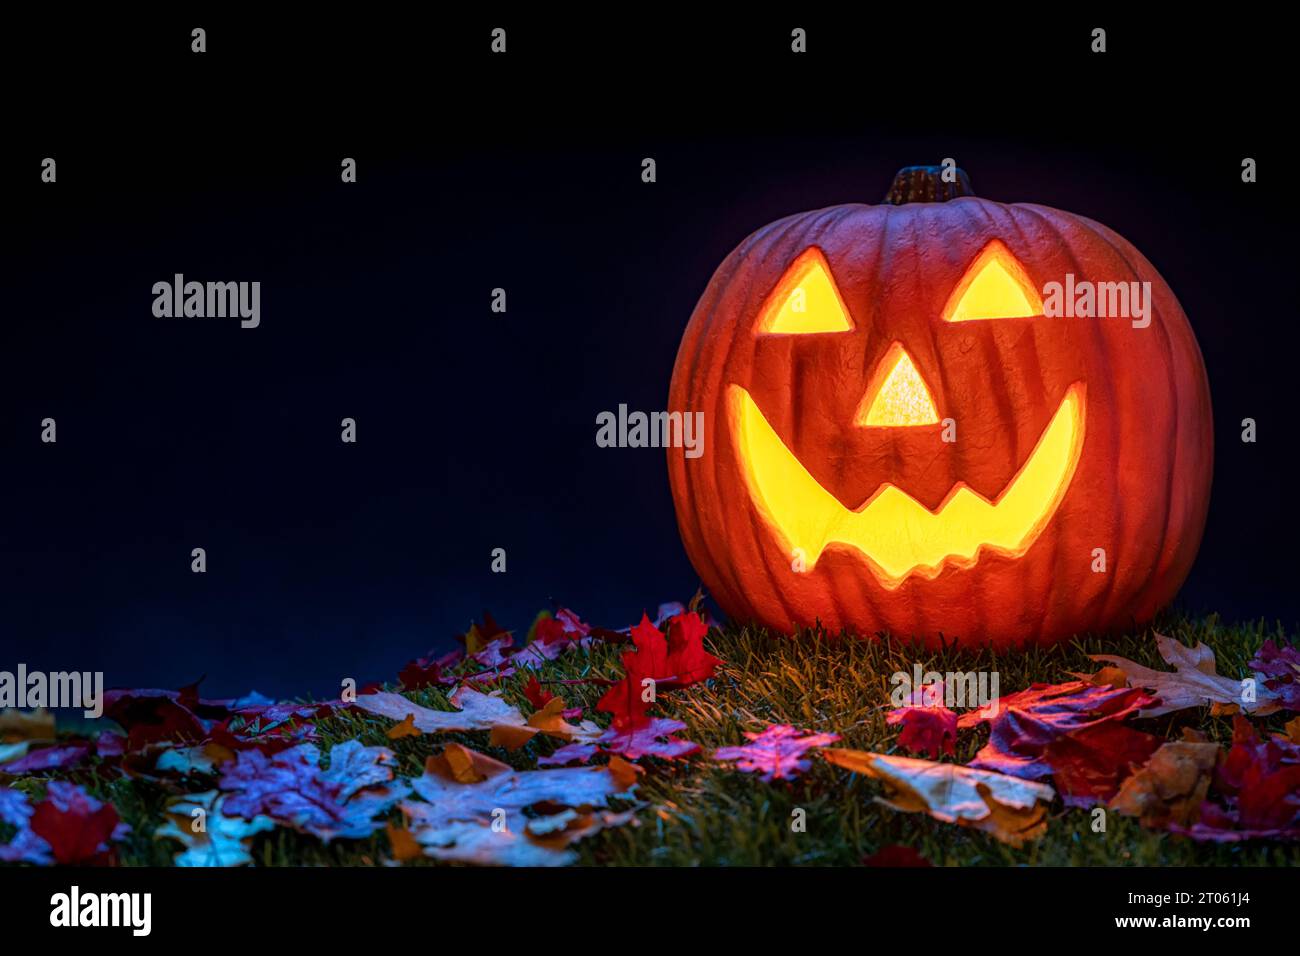 Un sorridente Jack o Lanterna con foglie cadute come decorazione di Halloween. Si illumina dalla luce interna ed è accentuata dalla luce blu della luna. Foto Stock